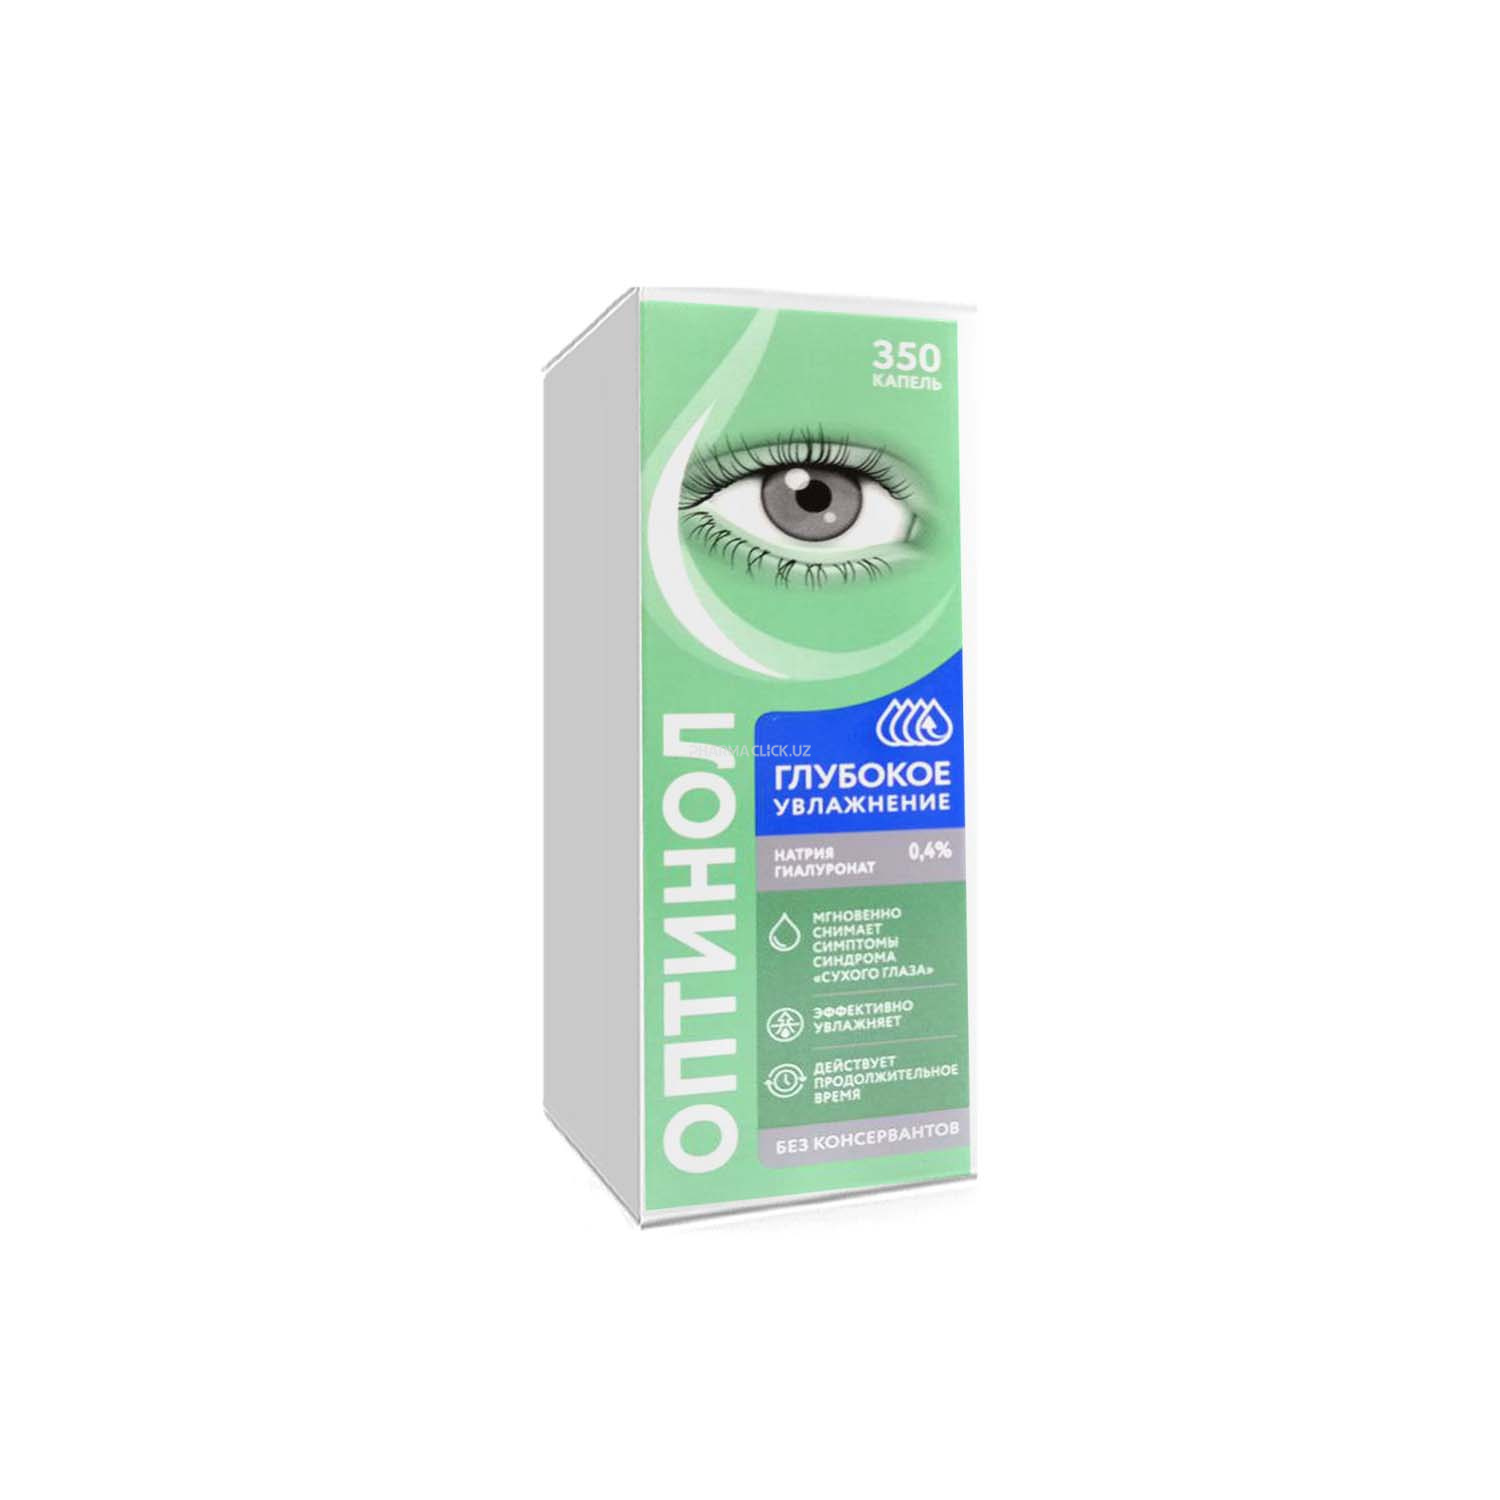 ОПТИНОЛ Глубокое увлажнение средство увлажняющее офтальмологическое 0,4% 10мл глазные капли №1(1х1)